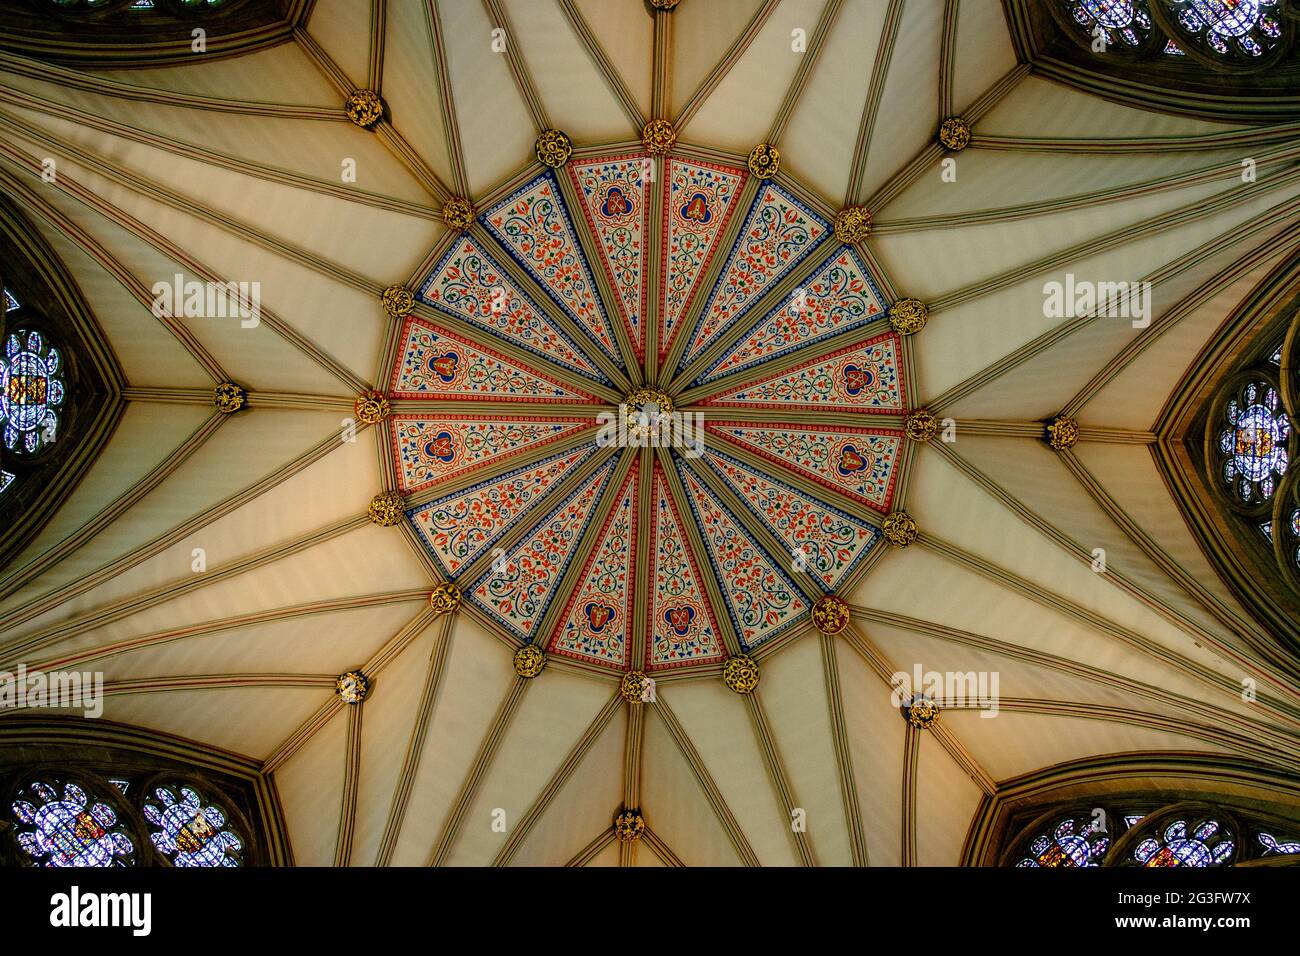 Komplizierte Details der gewölbten Decke des Kapitelhauses, Teil der York Minster Cathedral, York, England Stockfoto